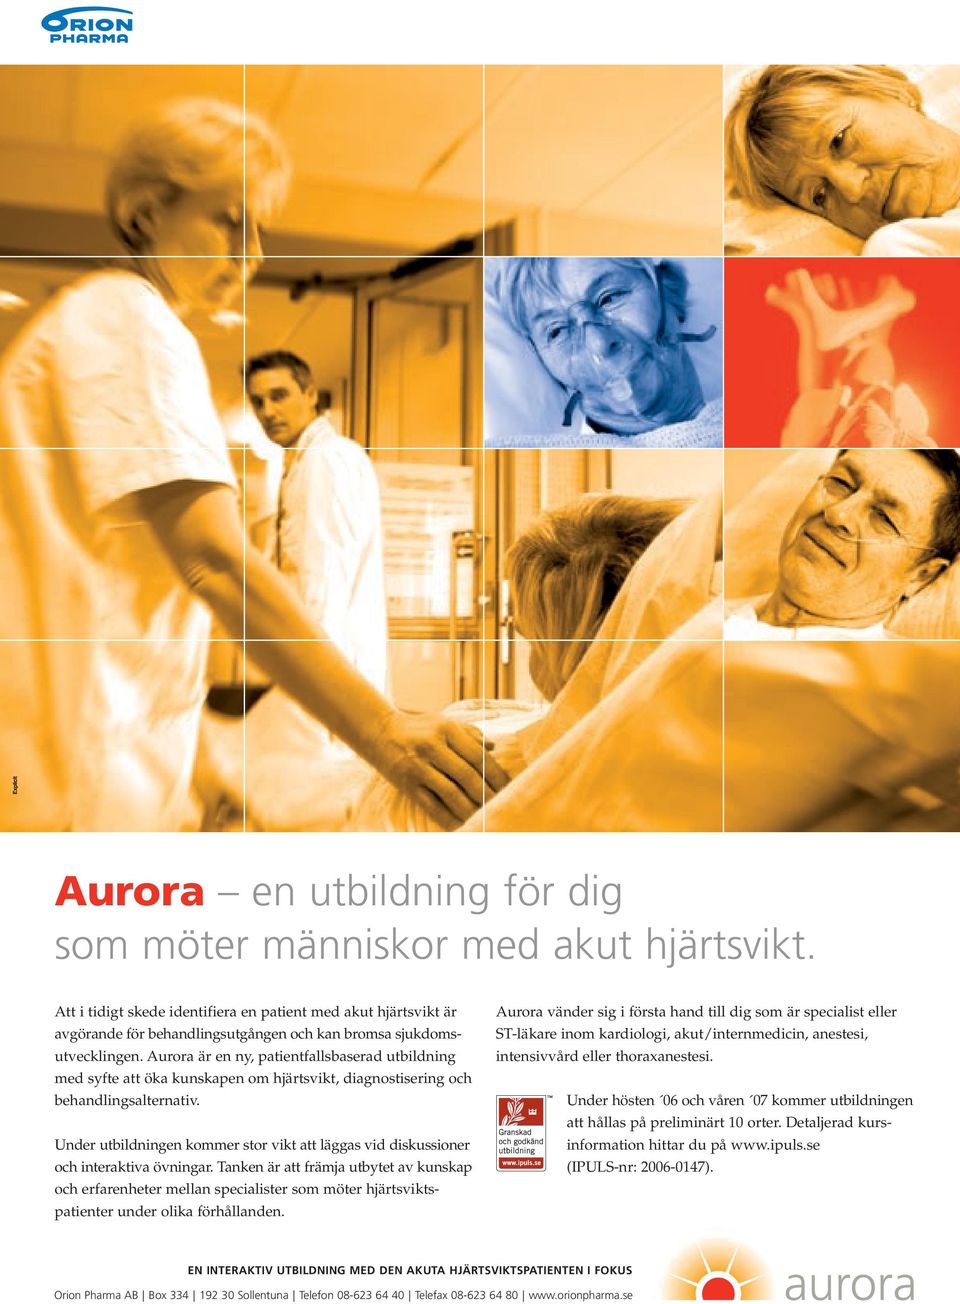 Aurora är en ny, patientfallsbaserad utbildning med syfte att öka kunskapen om hjärtsvikt, diagnostisering och behandlingsalternativ.